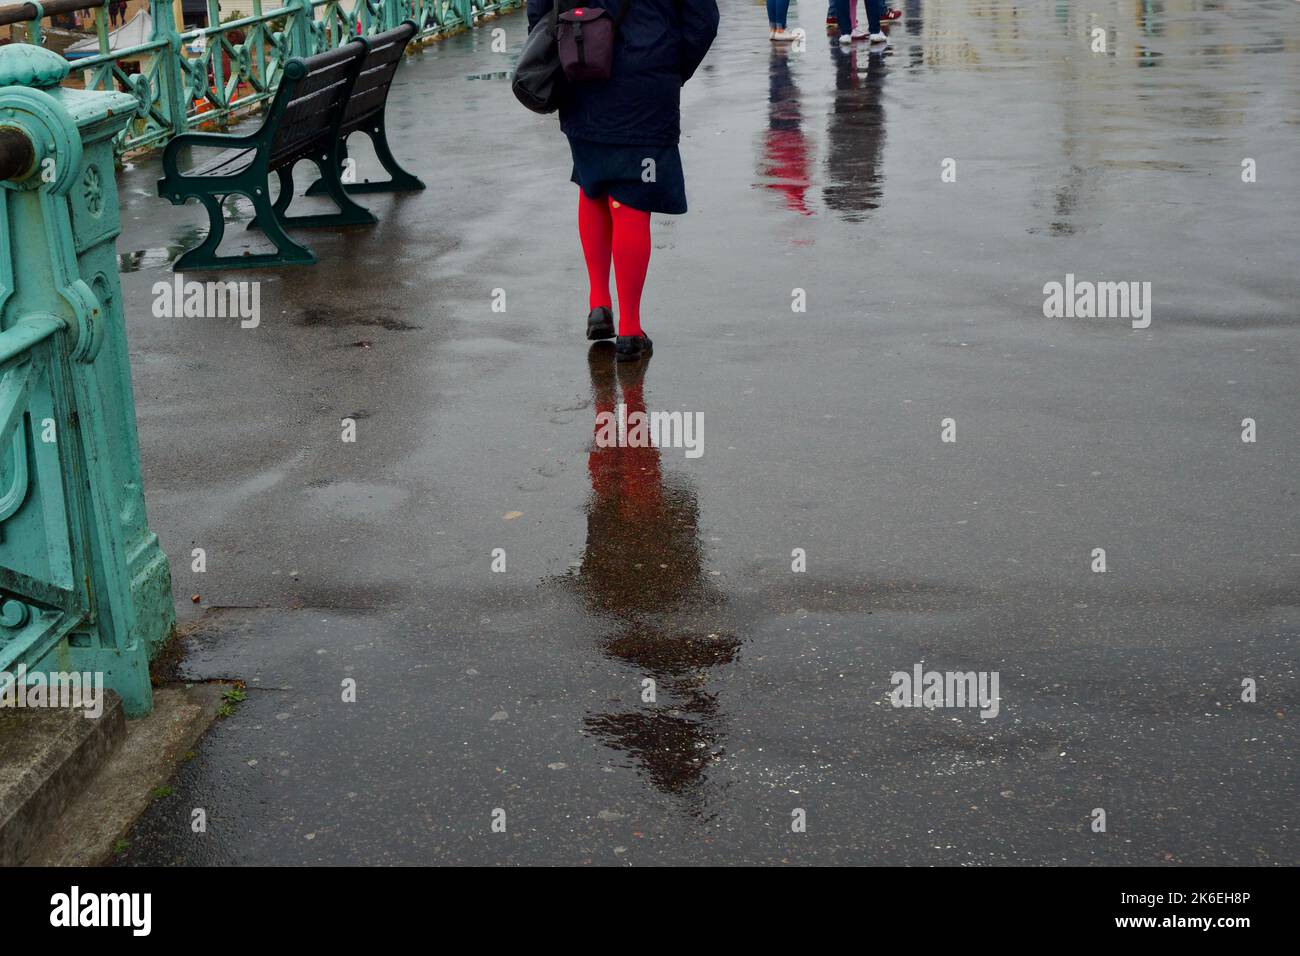 Femme en bas rouge marchant dans la pluie, Brighton, Angleterre, Royaume-Uni Banque D'Images